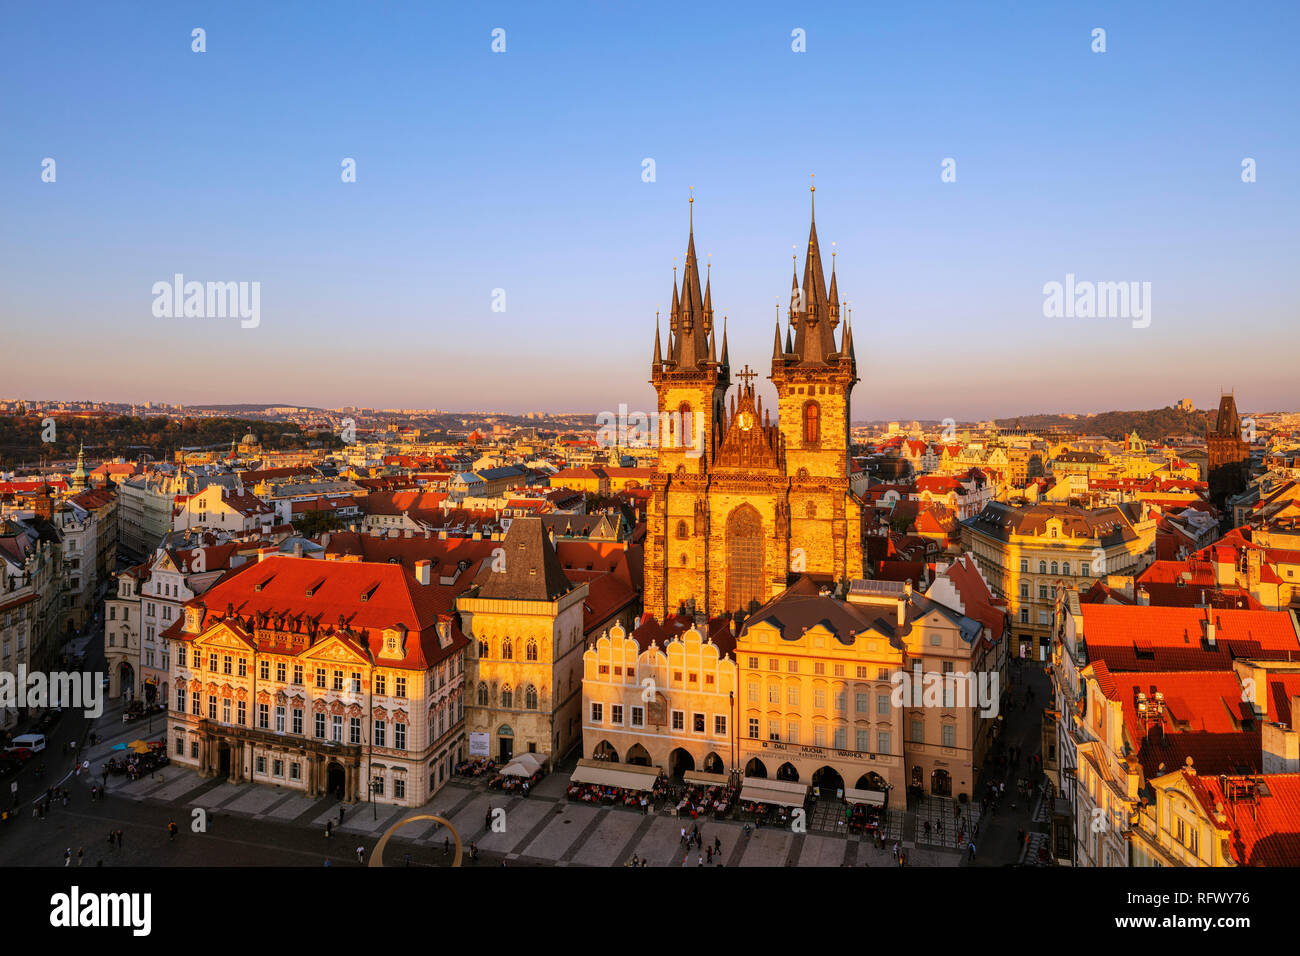 Plaza de la ciudad vieja, la iglesia de Nuestra Señora antes de Tyn, Sitio del Patrimonio Mundial de la UNESCO, Praga, República Checa, Europa Foto de stock